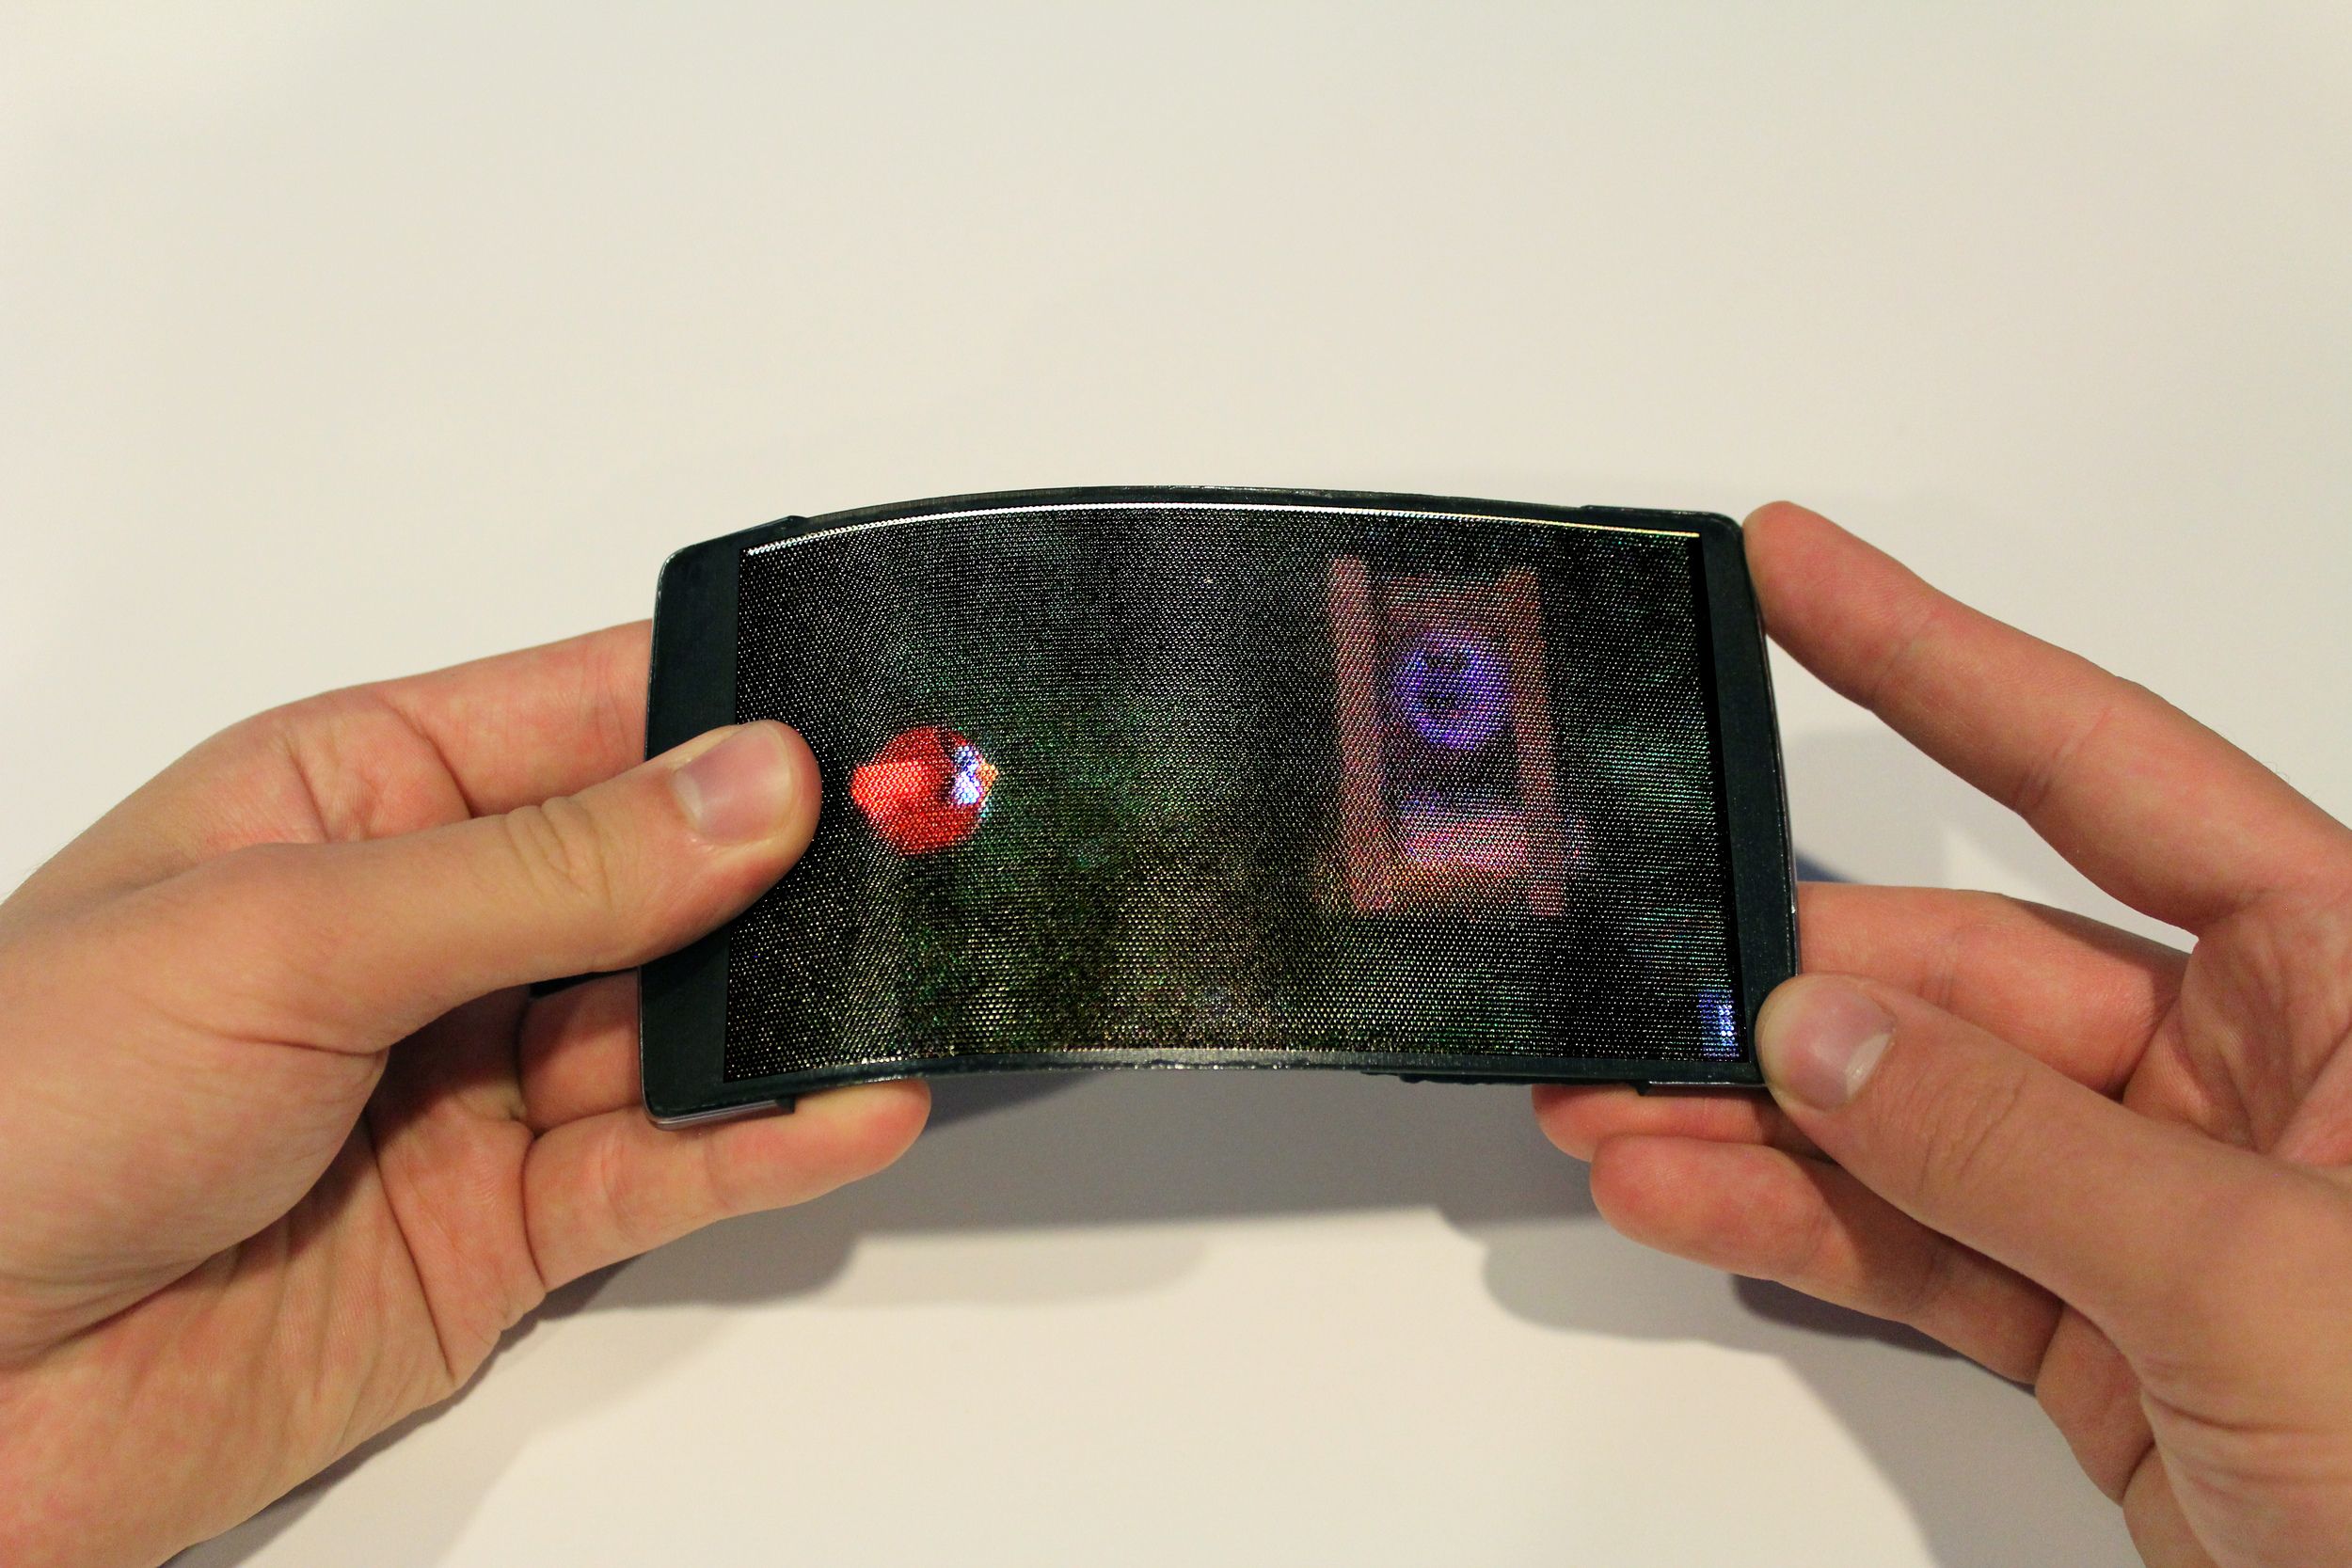 Descubrimos HoloFlex, el primer smartphone flexible con hologramas incluidos